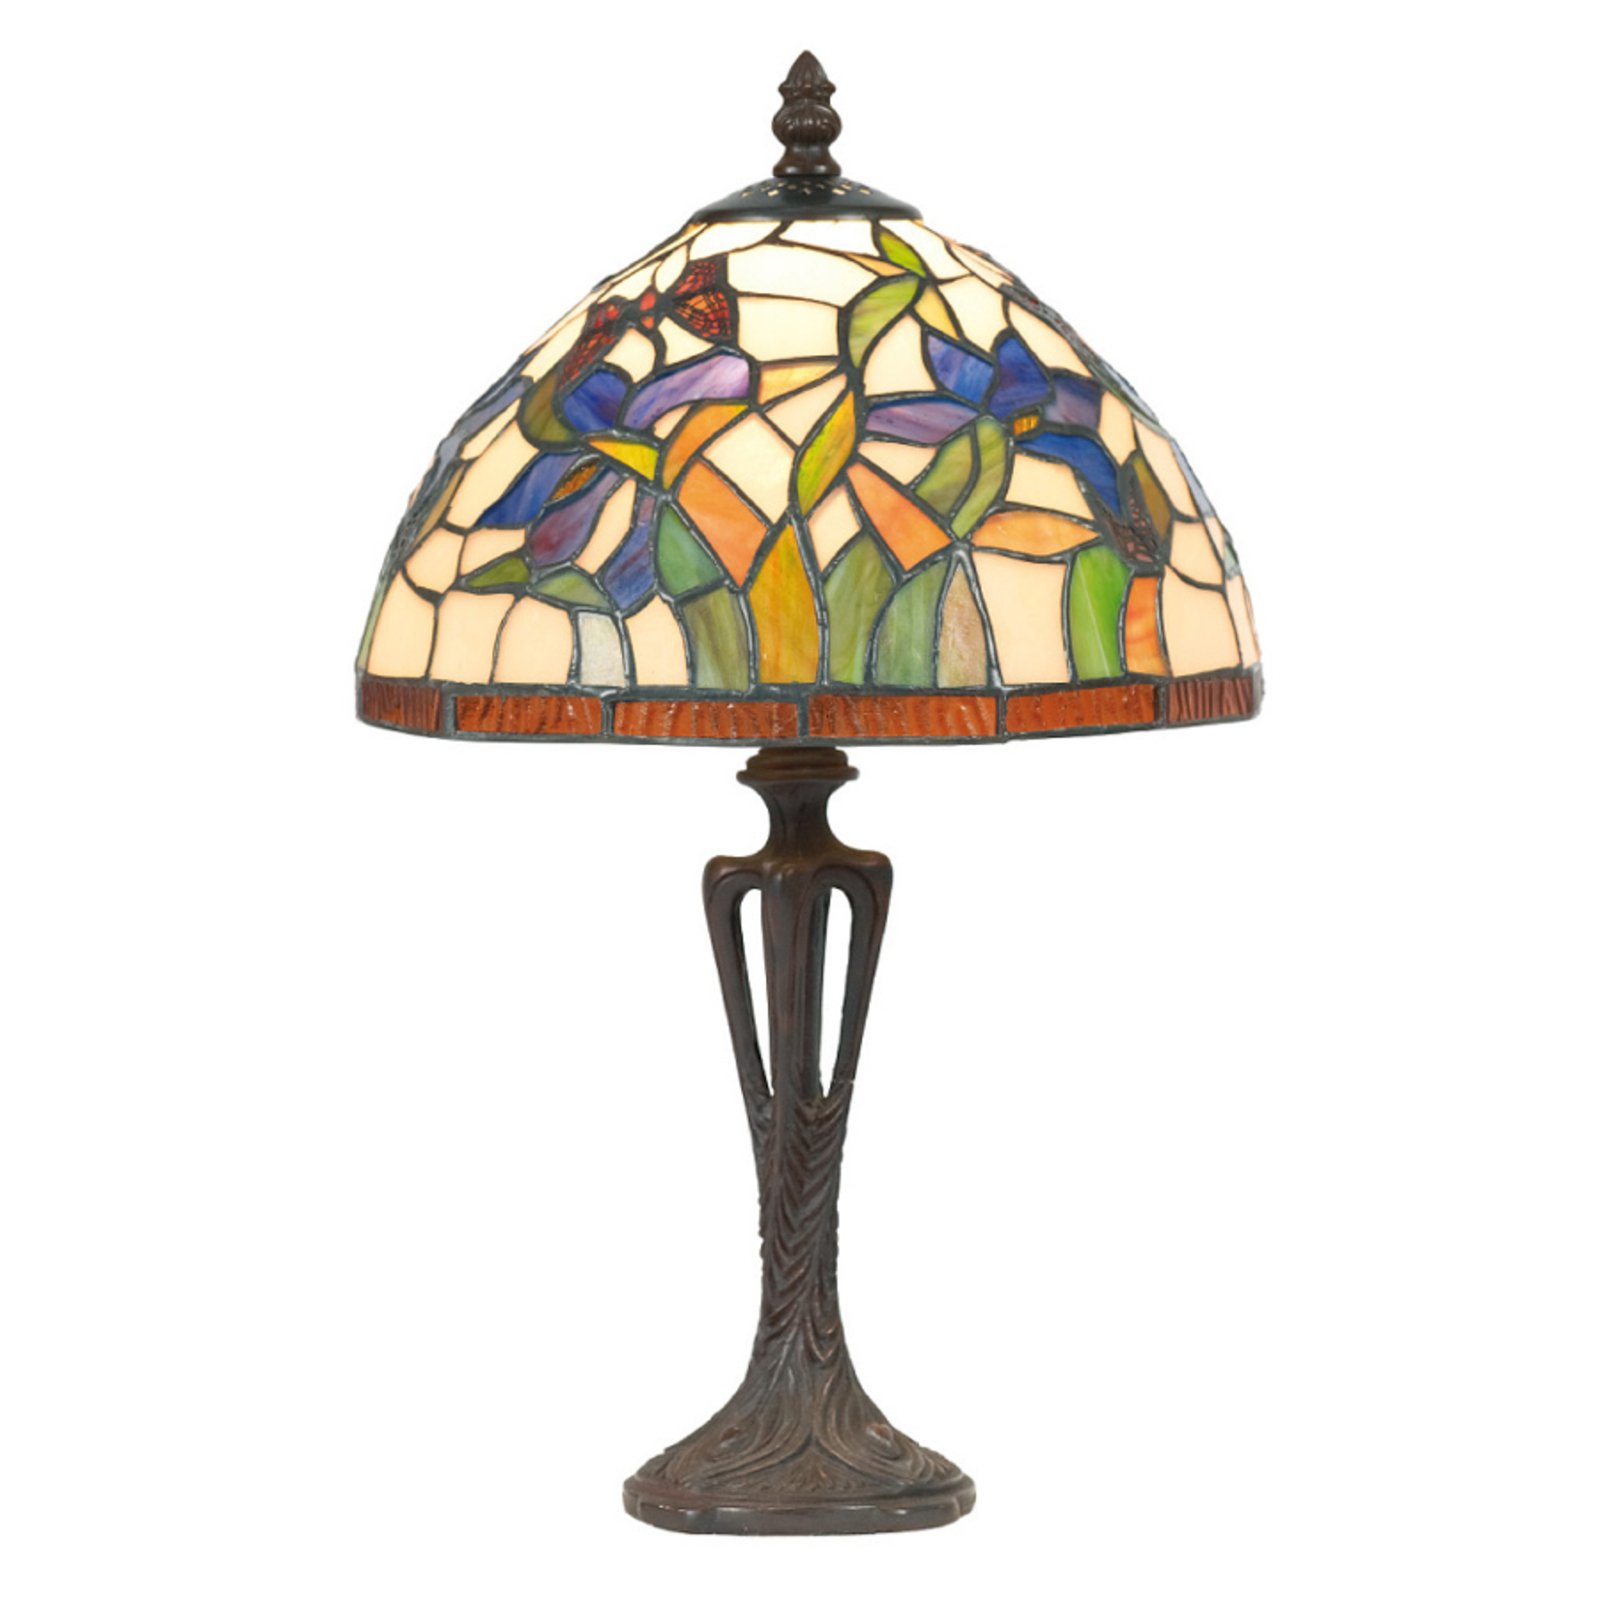 Elanda table lamp in a Tiffany style, 40 cm